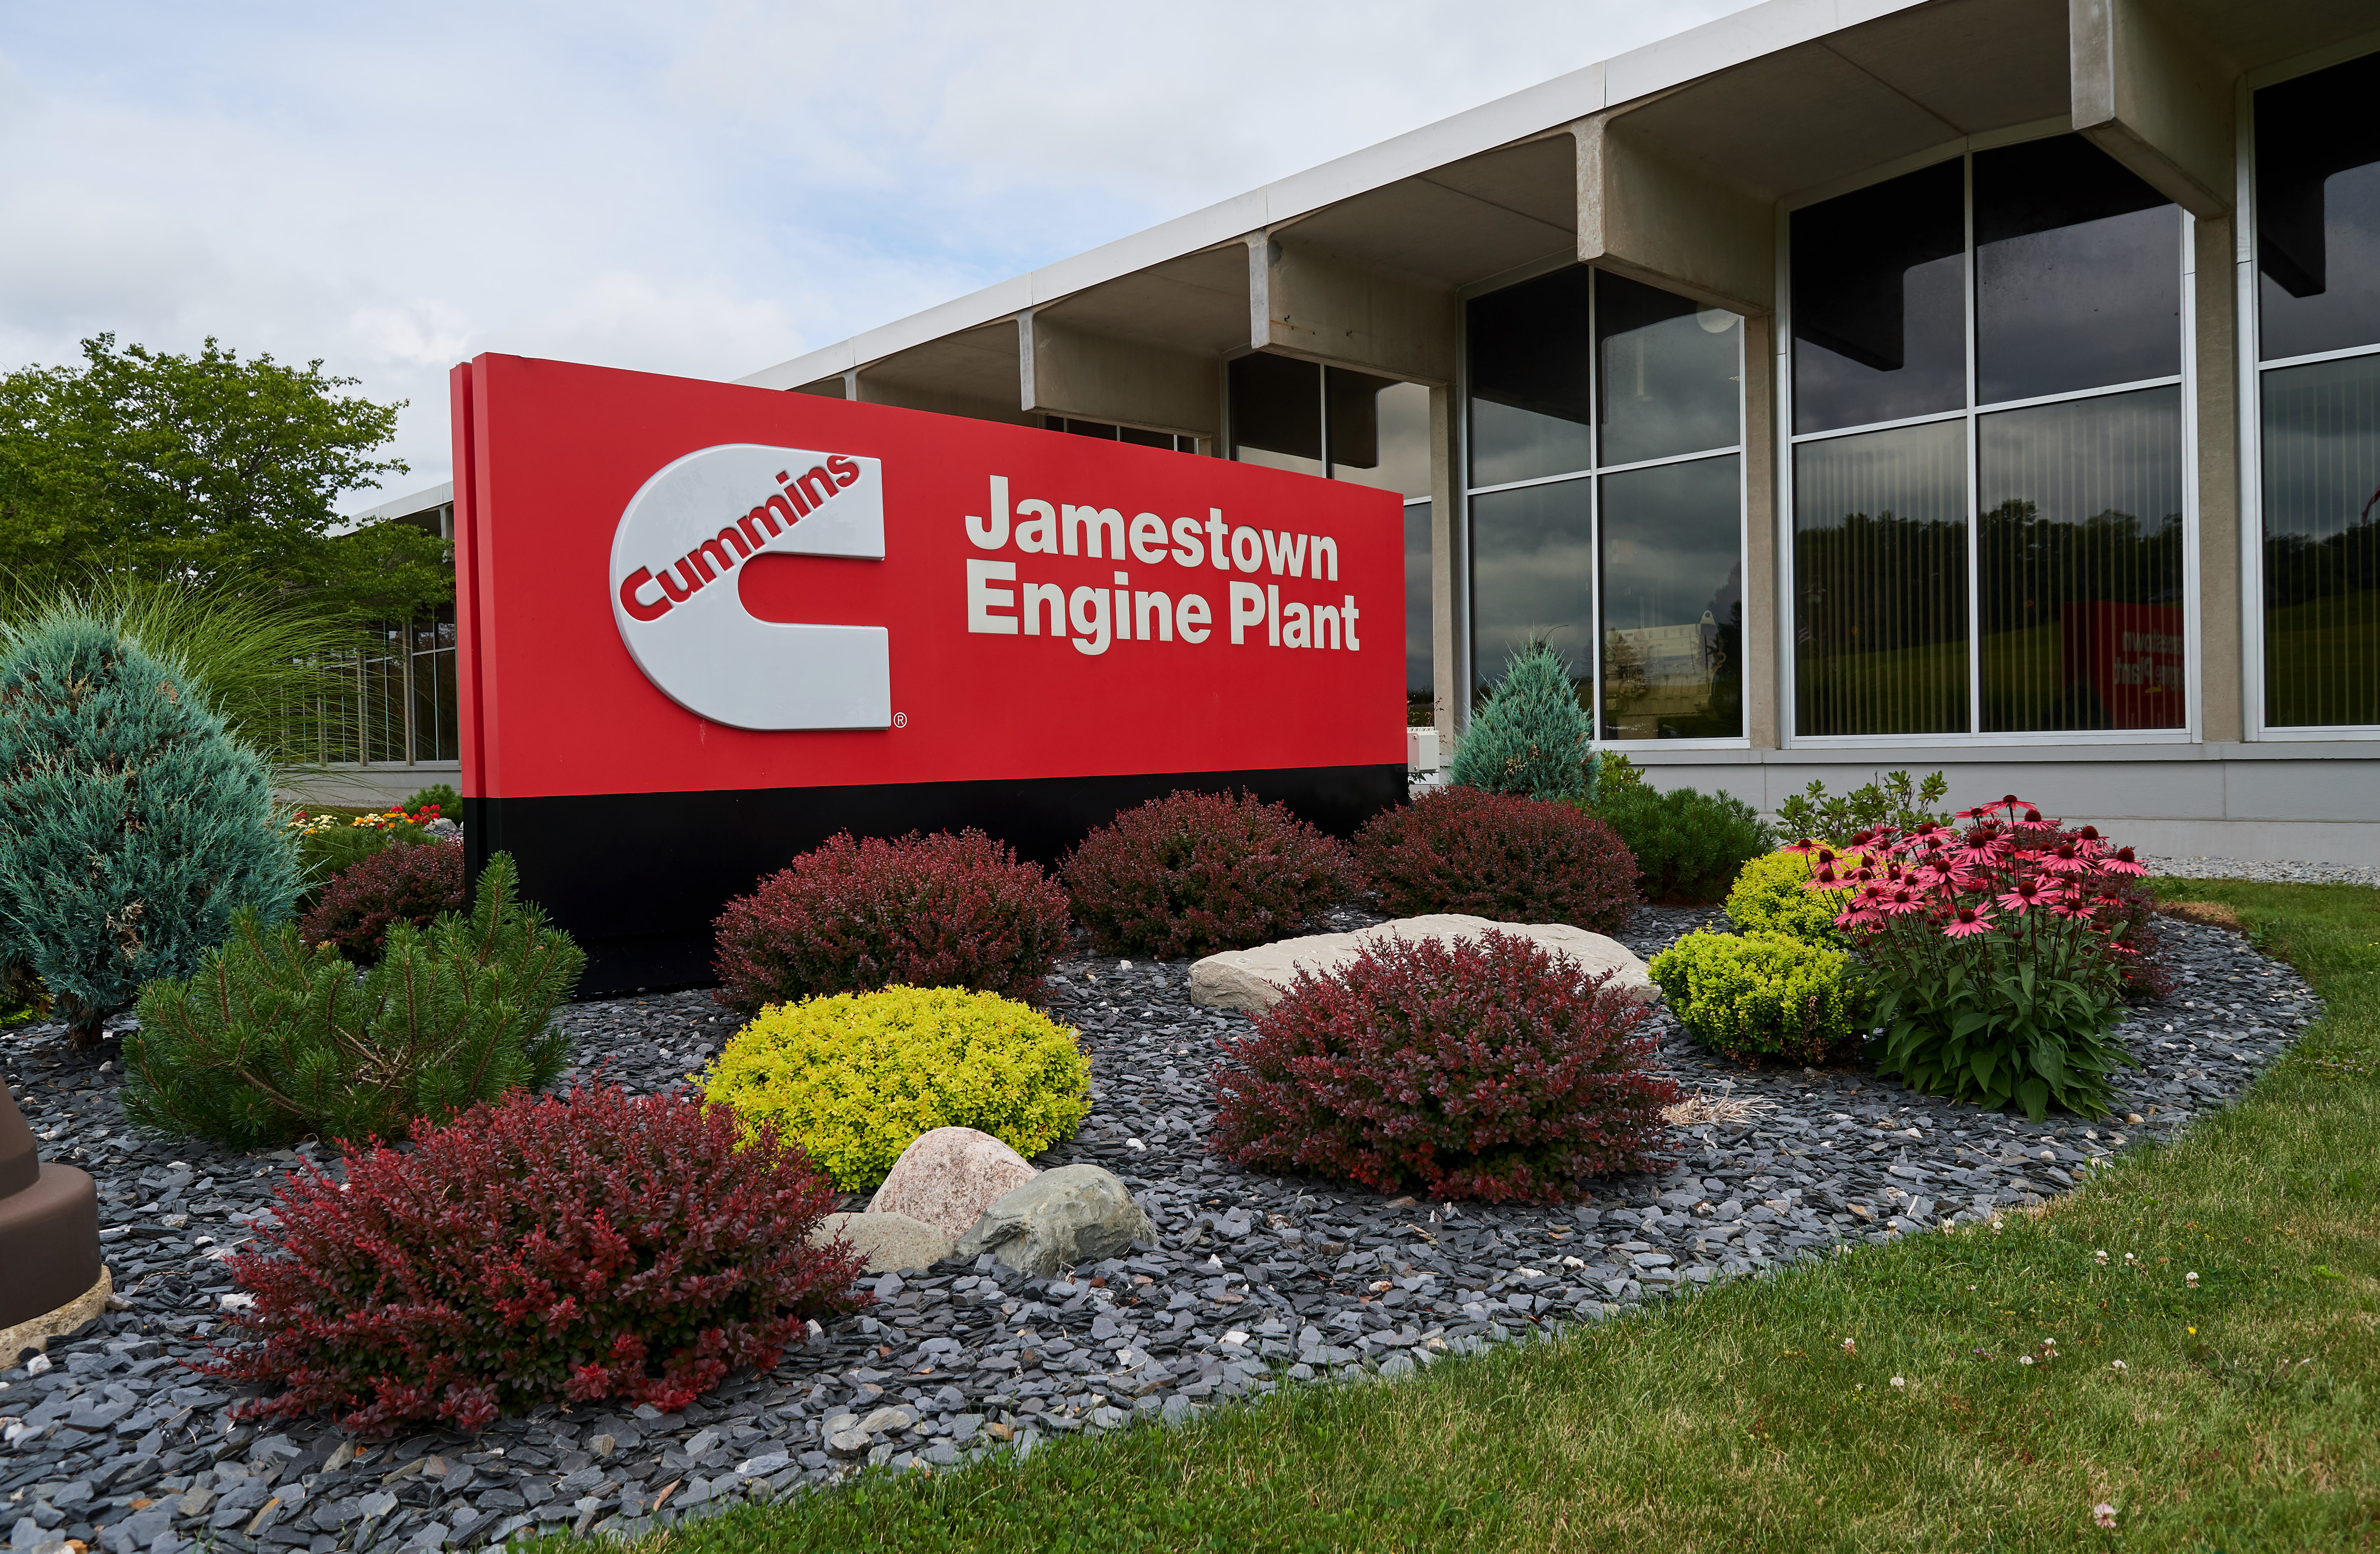 Завод Jamestown Engine Plant, помимо всего прочего, занимается производством двигателей X12 и X15.